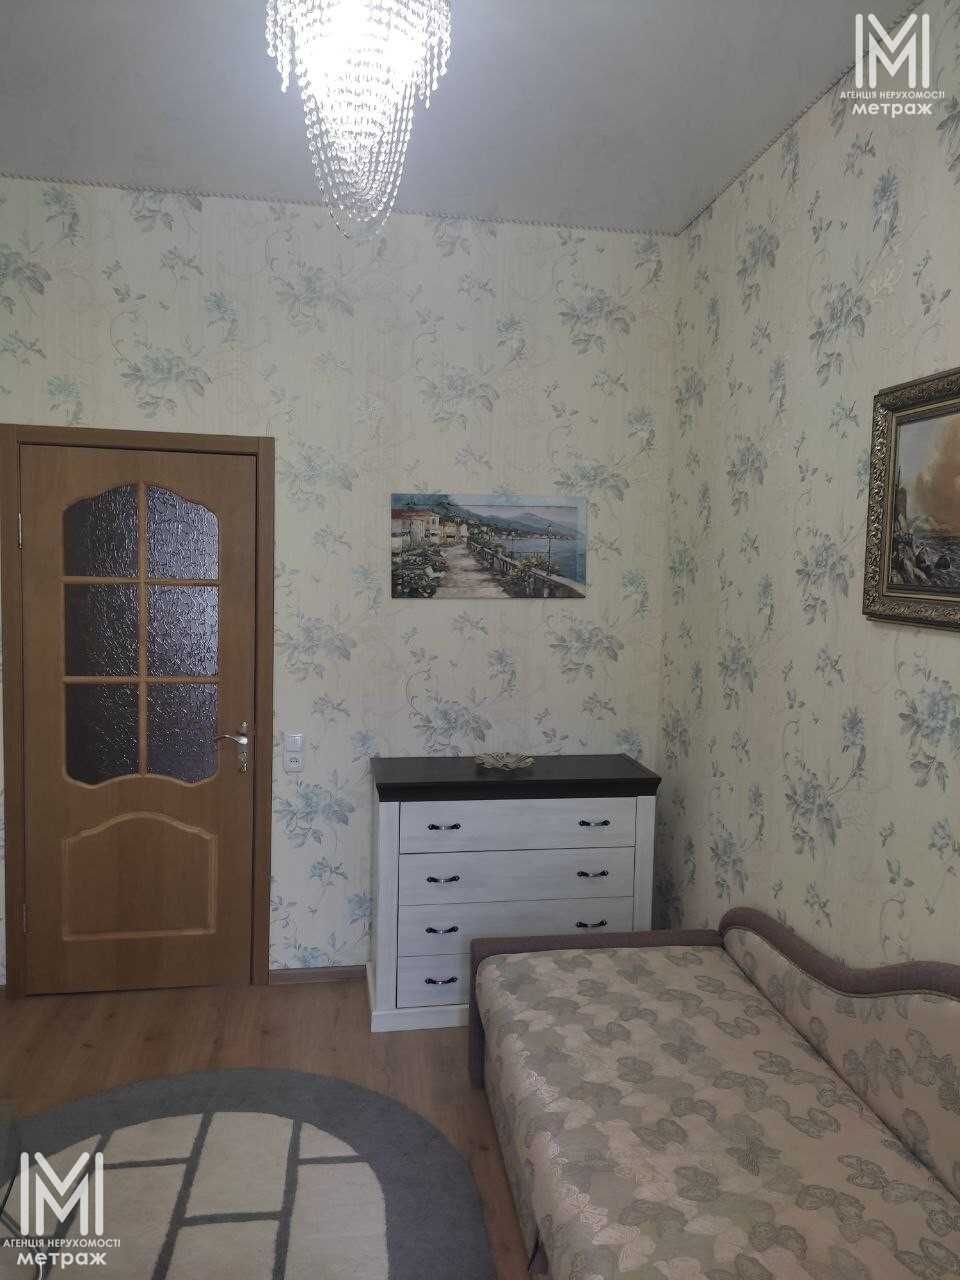 Продам 3к квартиру на Пушкинской,м.Бекетова